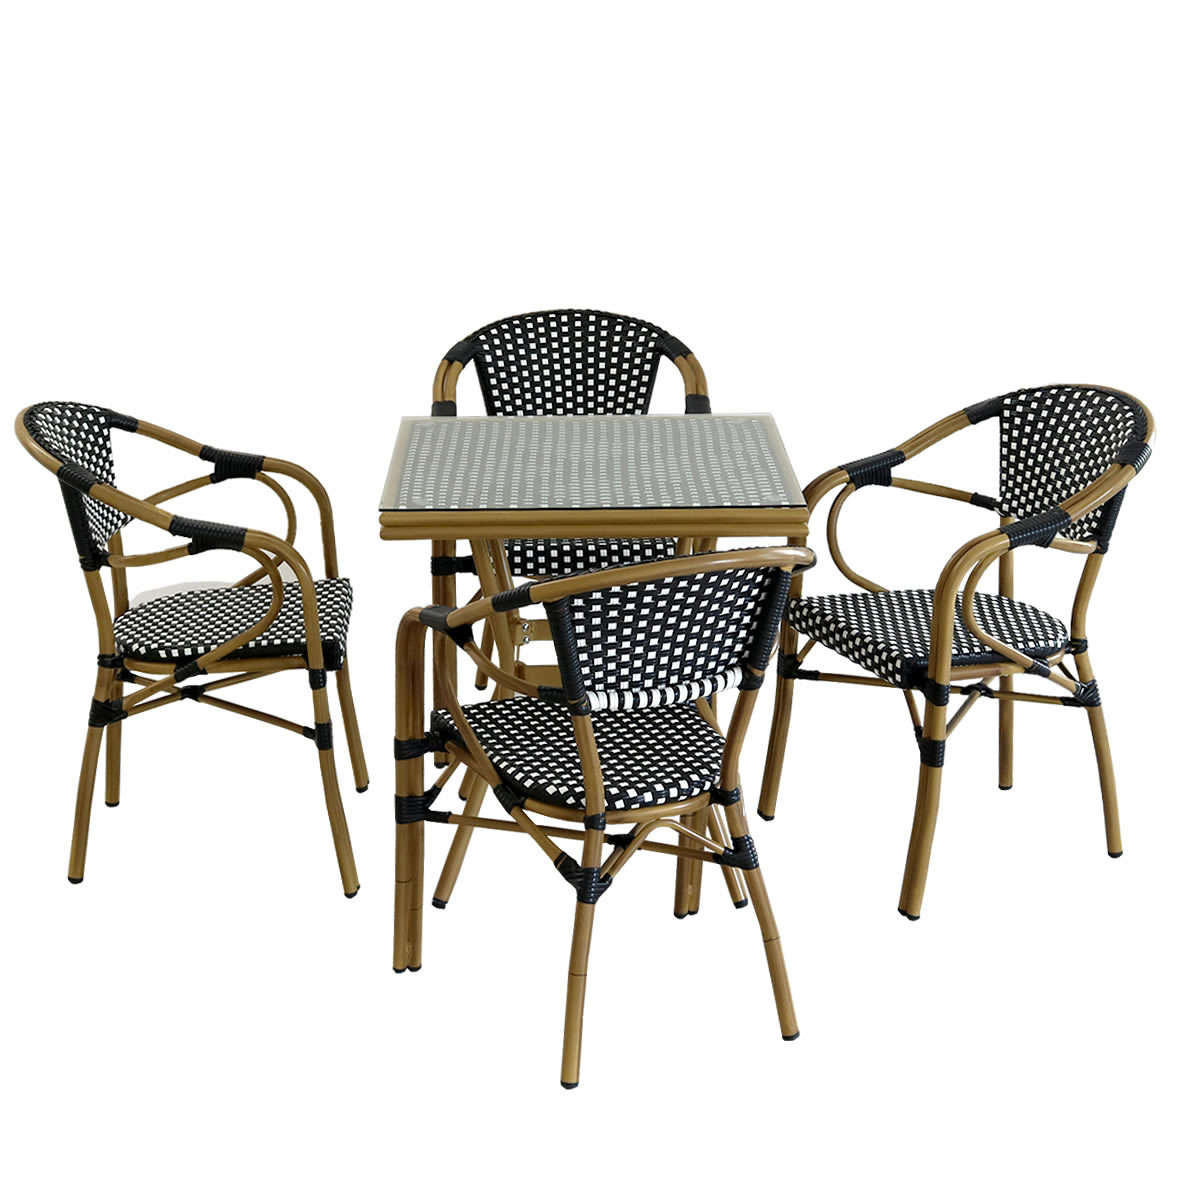 ガーデンテーブル ラタン調 スクエアテーブル チェアセット 5点セット 四角 正方形 ラタン調 机 椅子 おしゃれ 屋外 ガーデン 庭 ベランダ  バルコニー